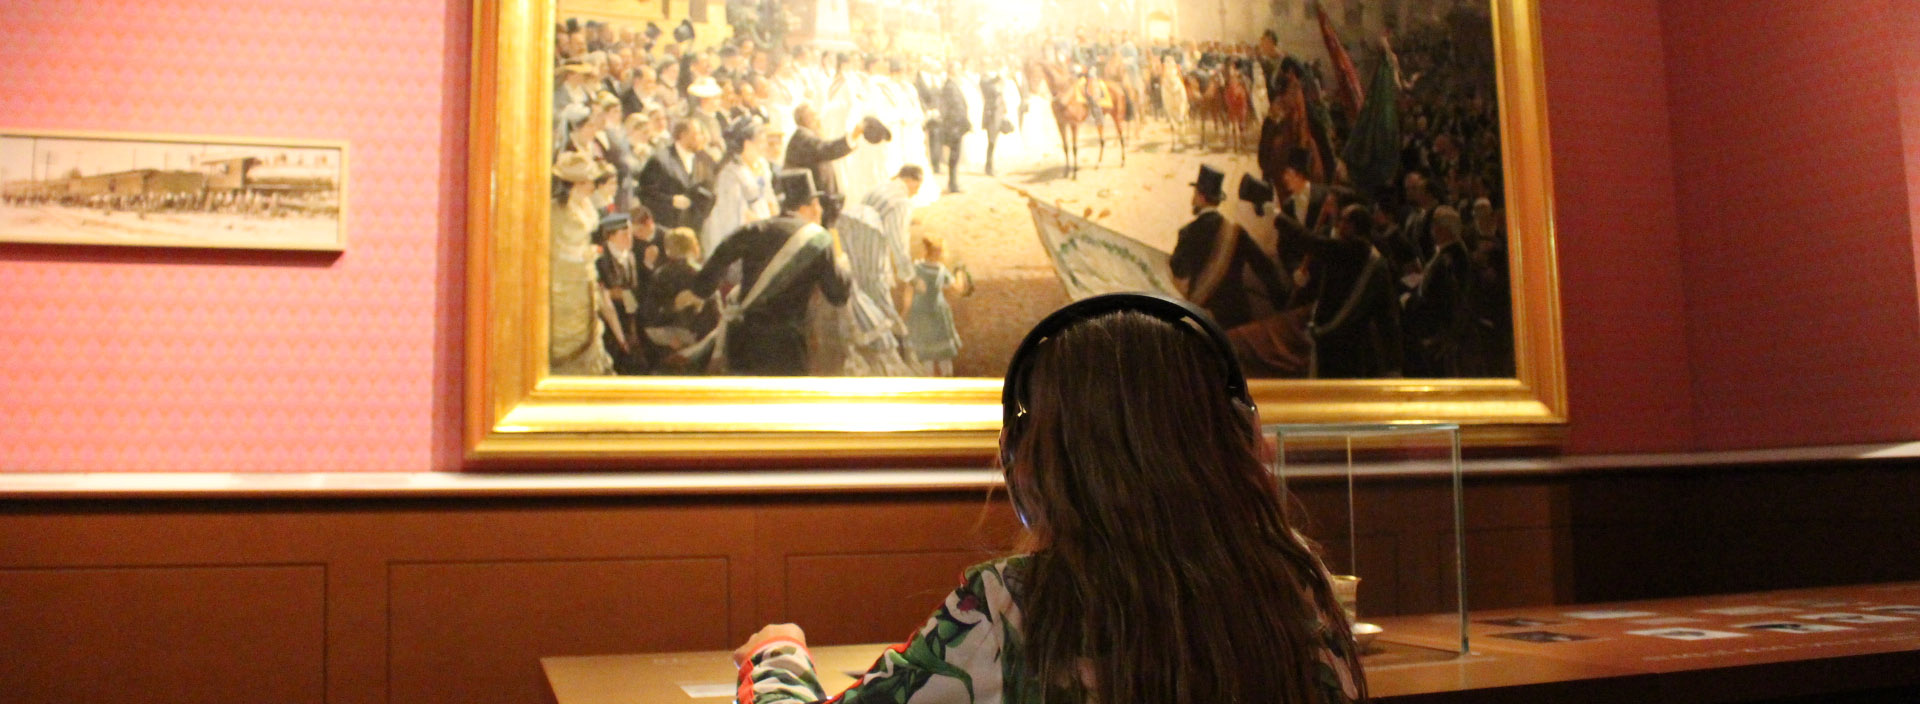 Ein Mädchen sitzt mit Kopfhörern am Tisch und betrachtet dabei ein historisches Gemälde.